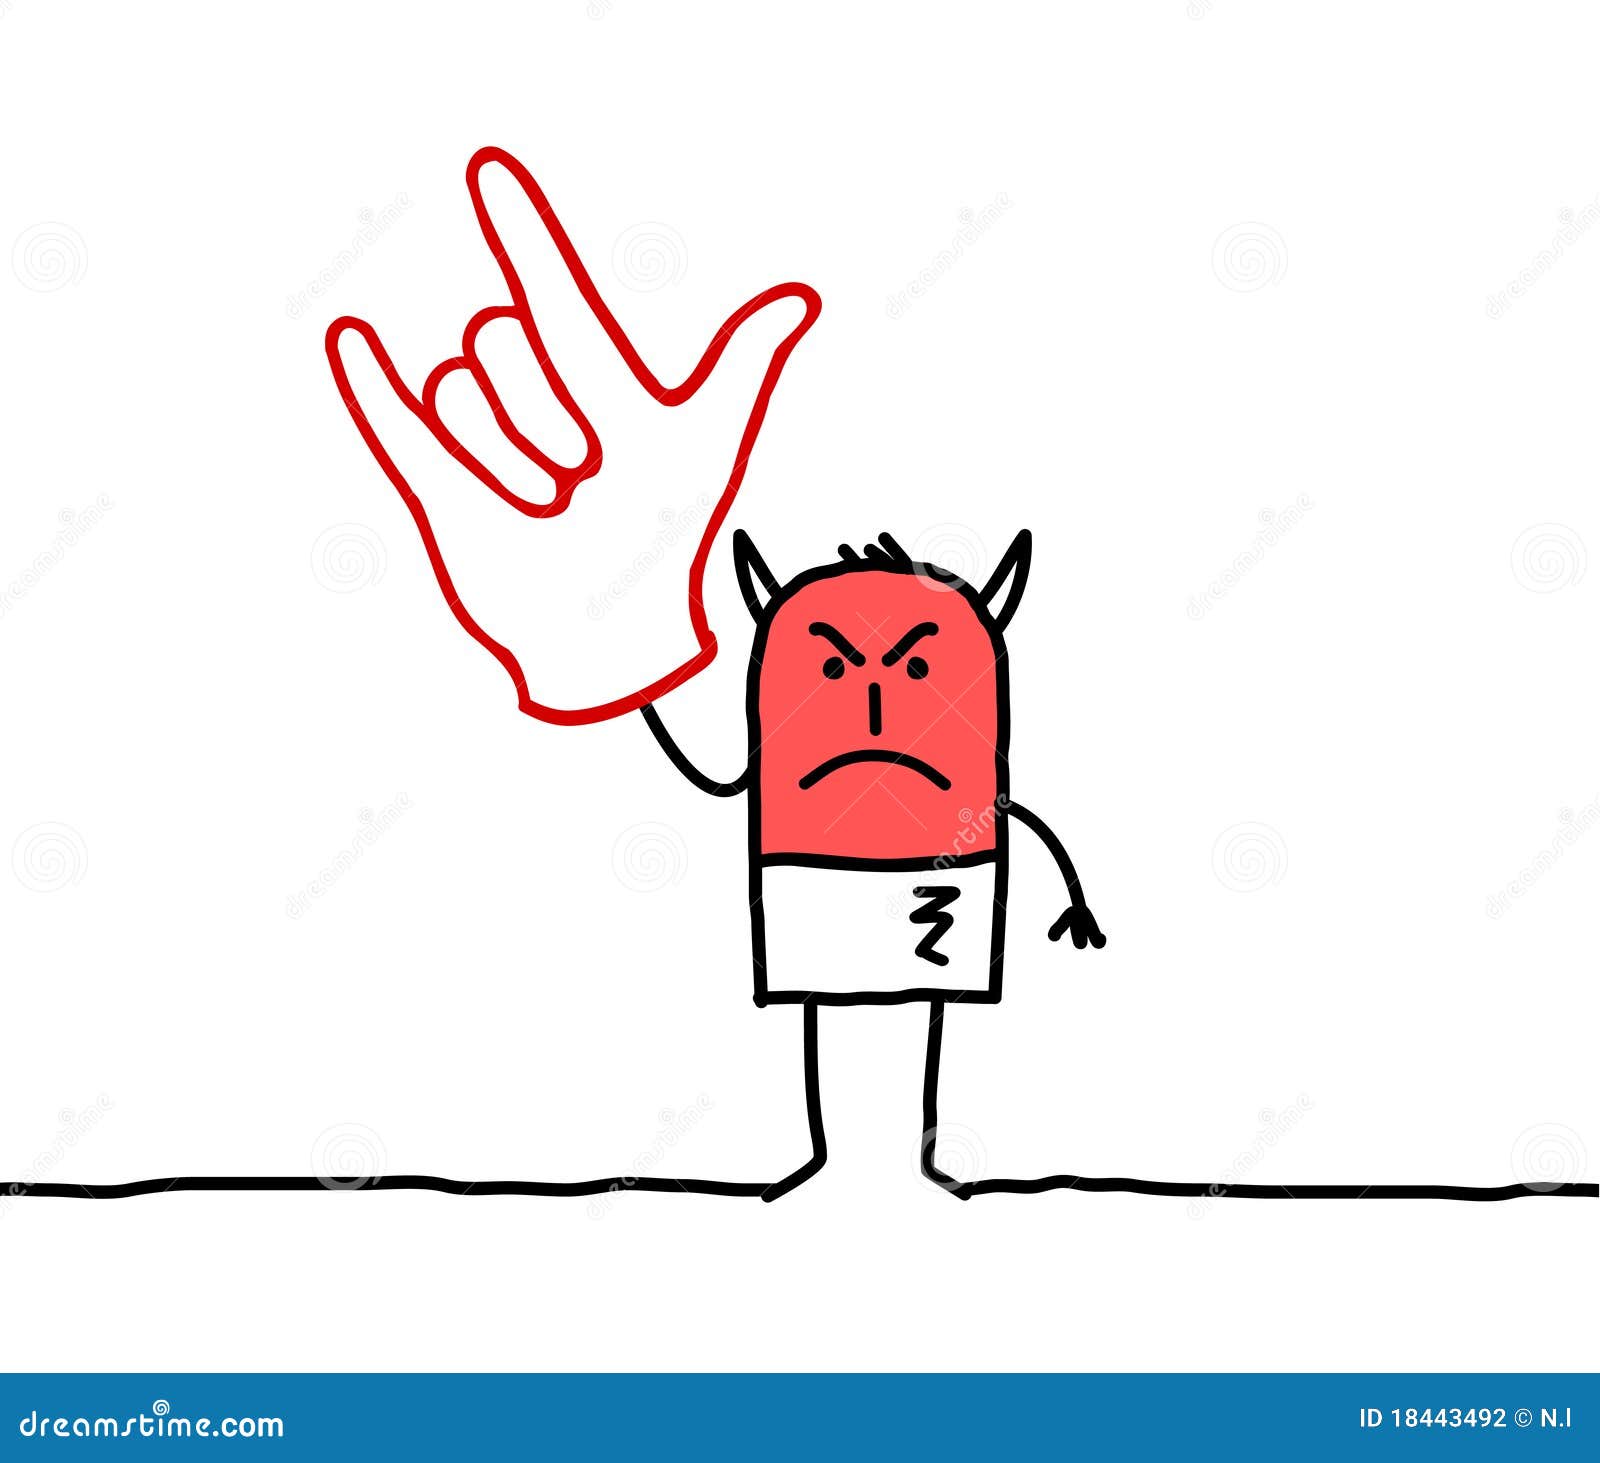 devil-hand-sign-18443492.jpg